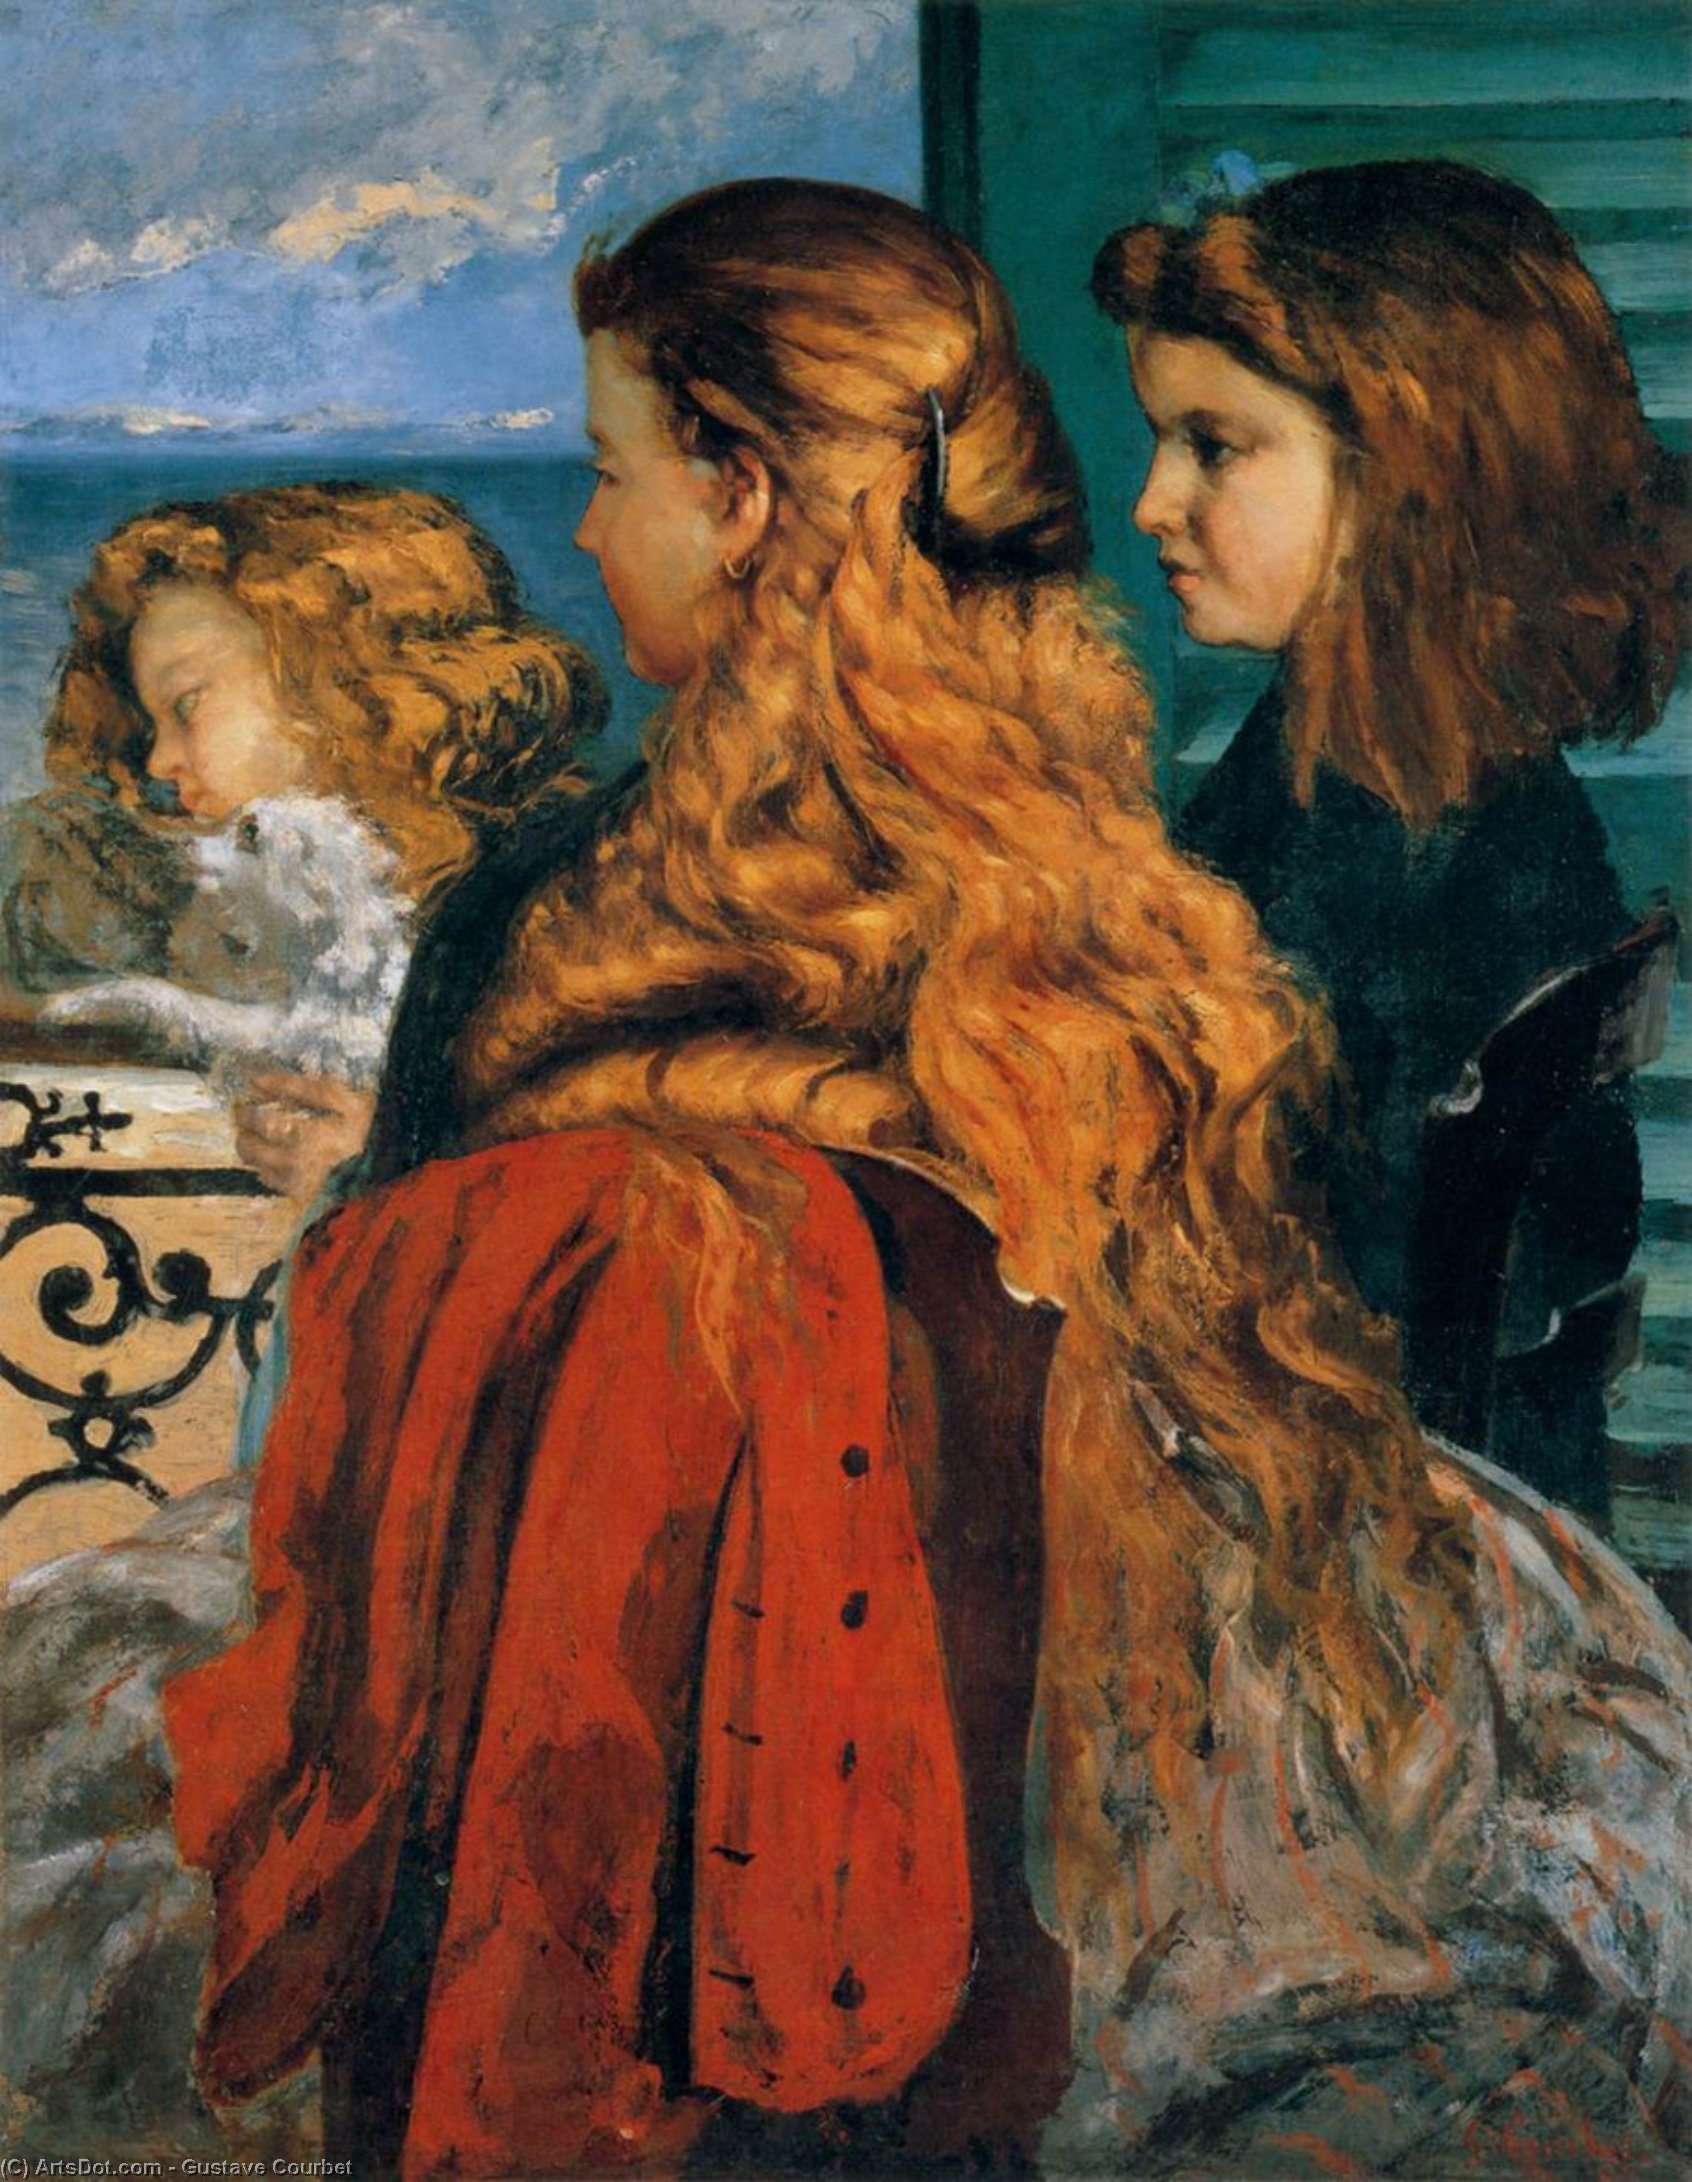 Comprar Reproducciones De Arte Del Museo Tres chicas inglesas en una ventana, 1865 de Gustave Courbet (1819-1877, France) | ArtsDot.com